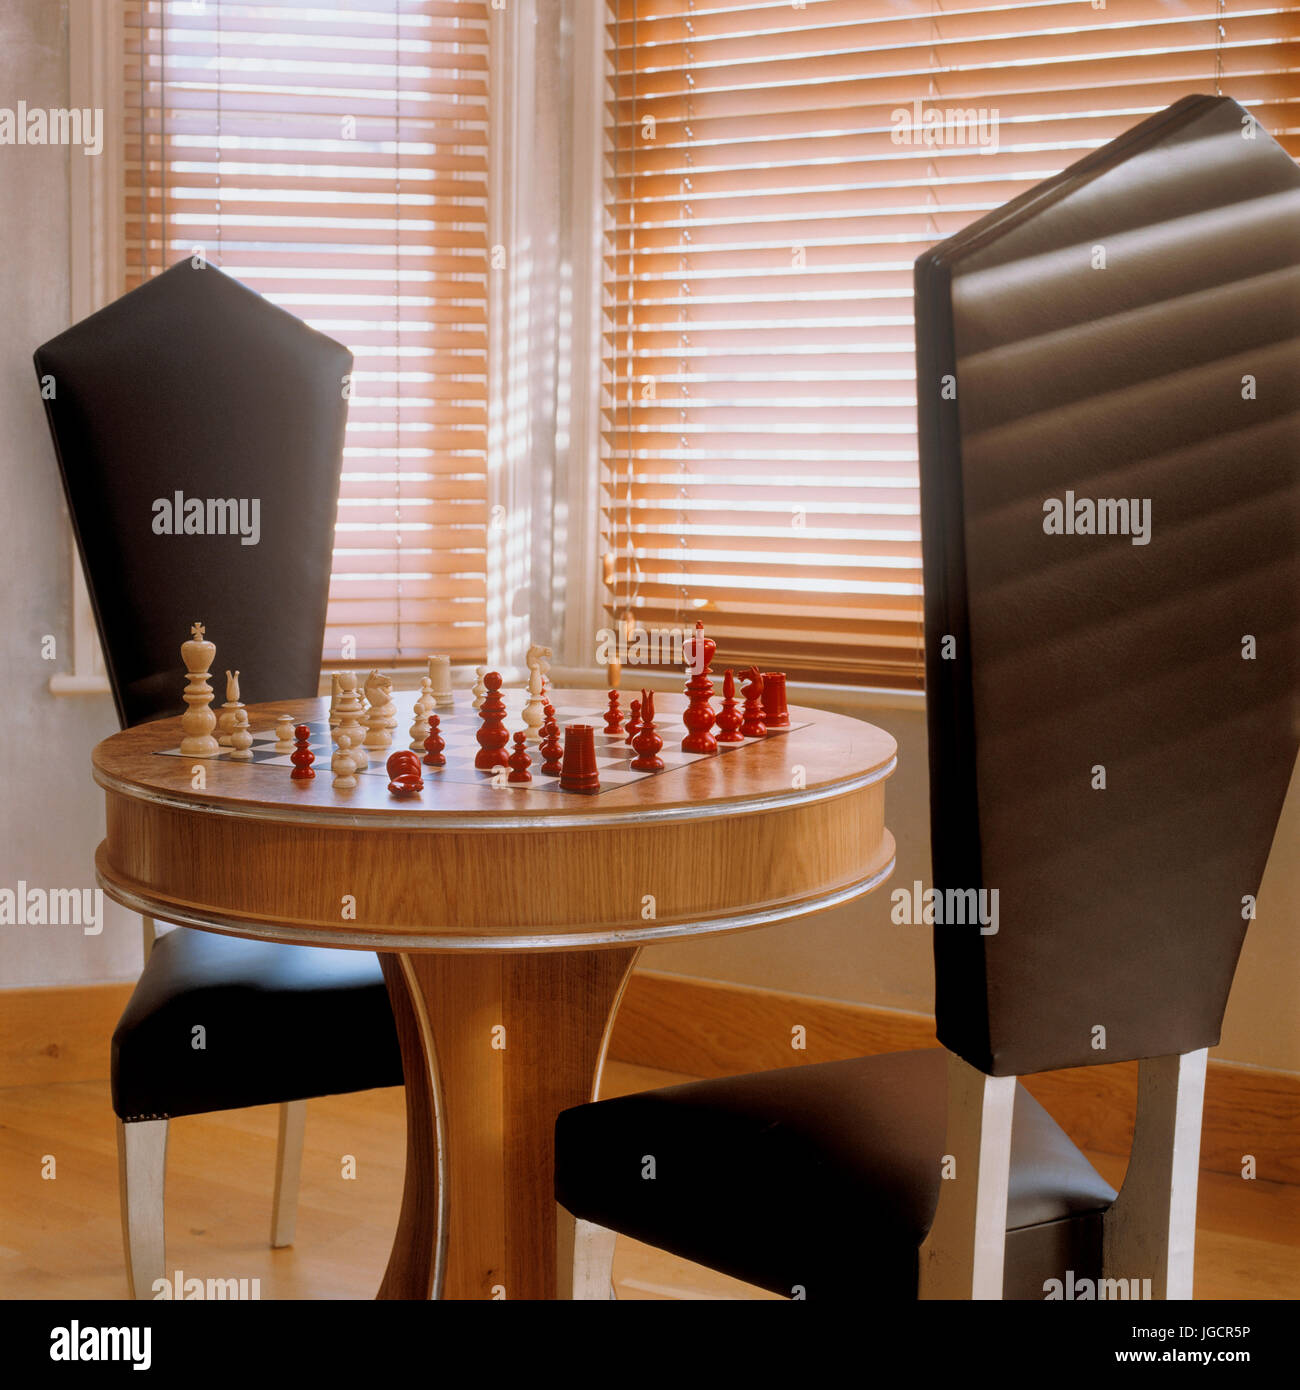 Table d'échecs de chaises noires Banque D'Images